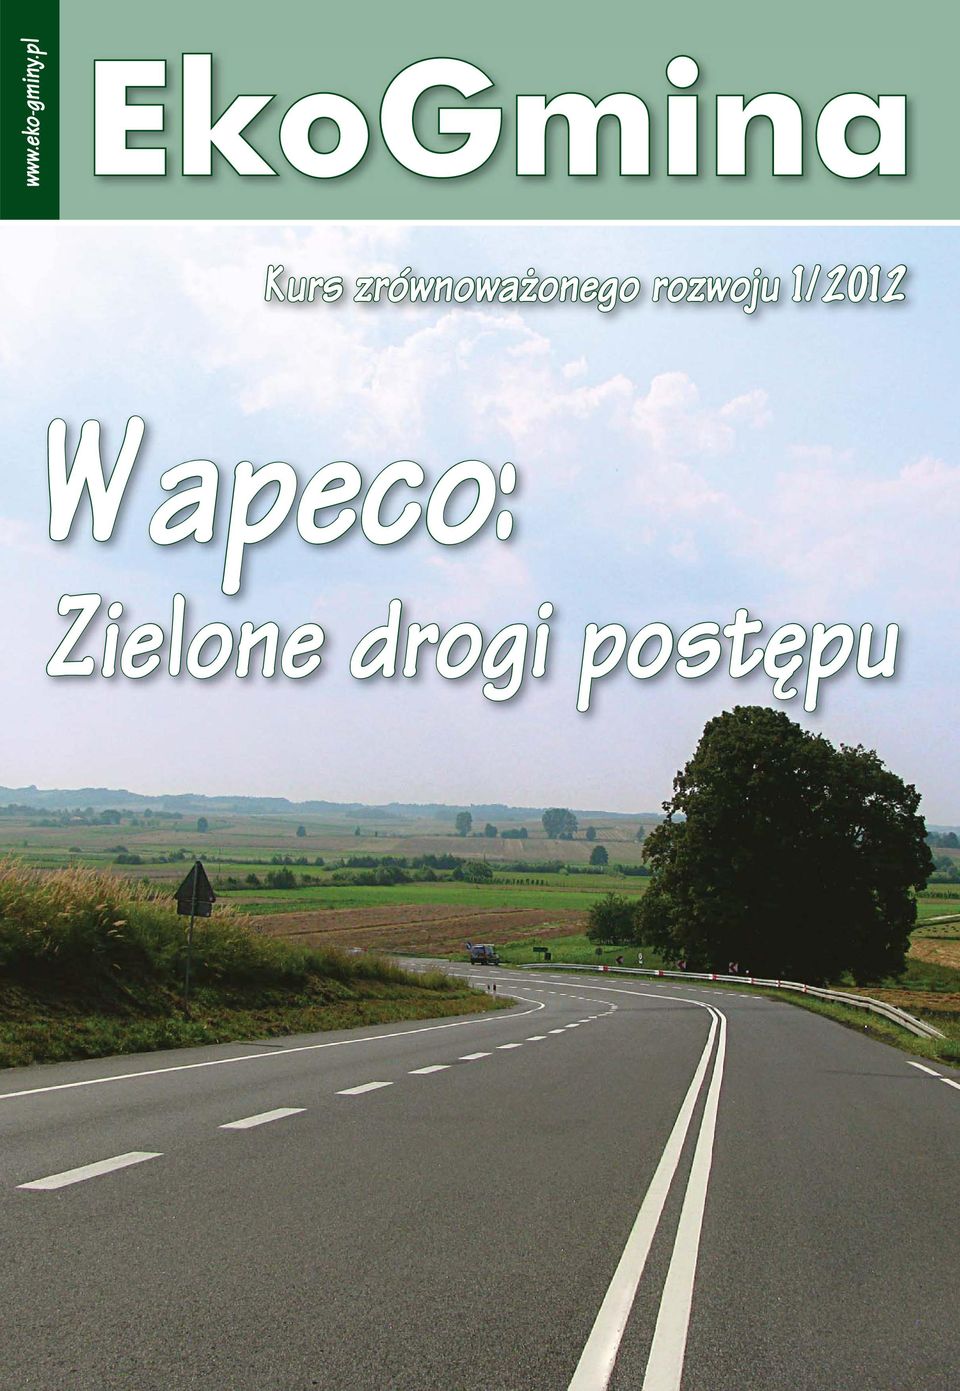 onego rozwoju 1/2012 Wapeco: